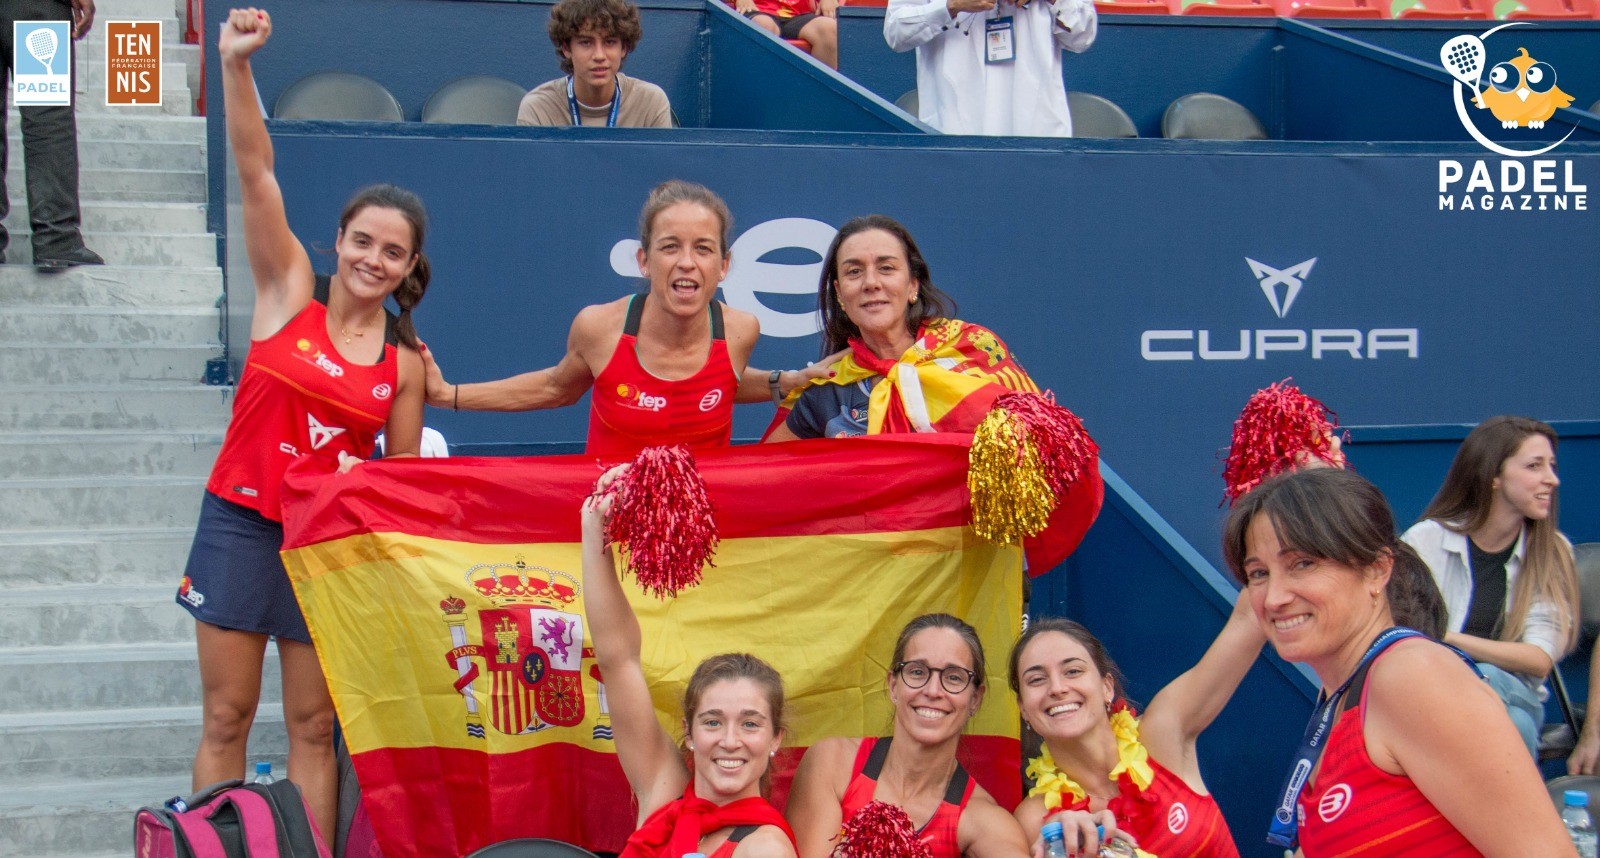 Le padel „Essen“ Sie Tennis in Spanien